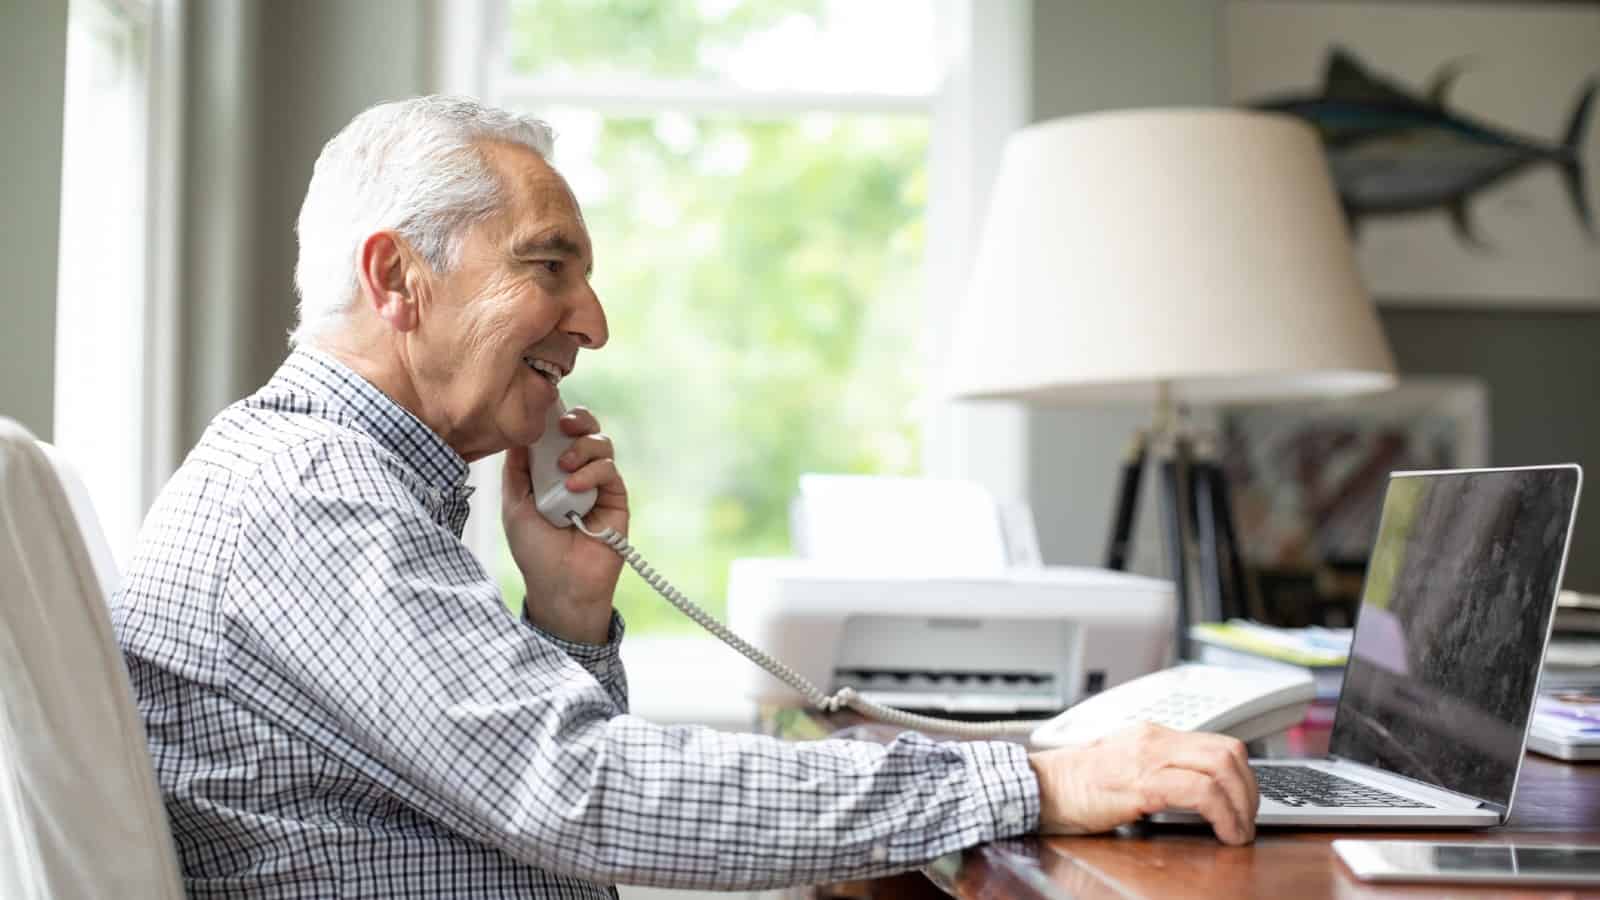 मुस्कुराते हुए वरिष्ठ श्वेत व्यक्ति डेस्क पर लैपटॉप का उपयोग करते हुए टेलीफोन पर बात कर रहे हैं।